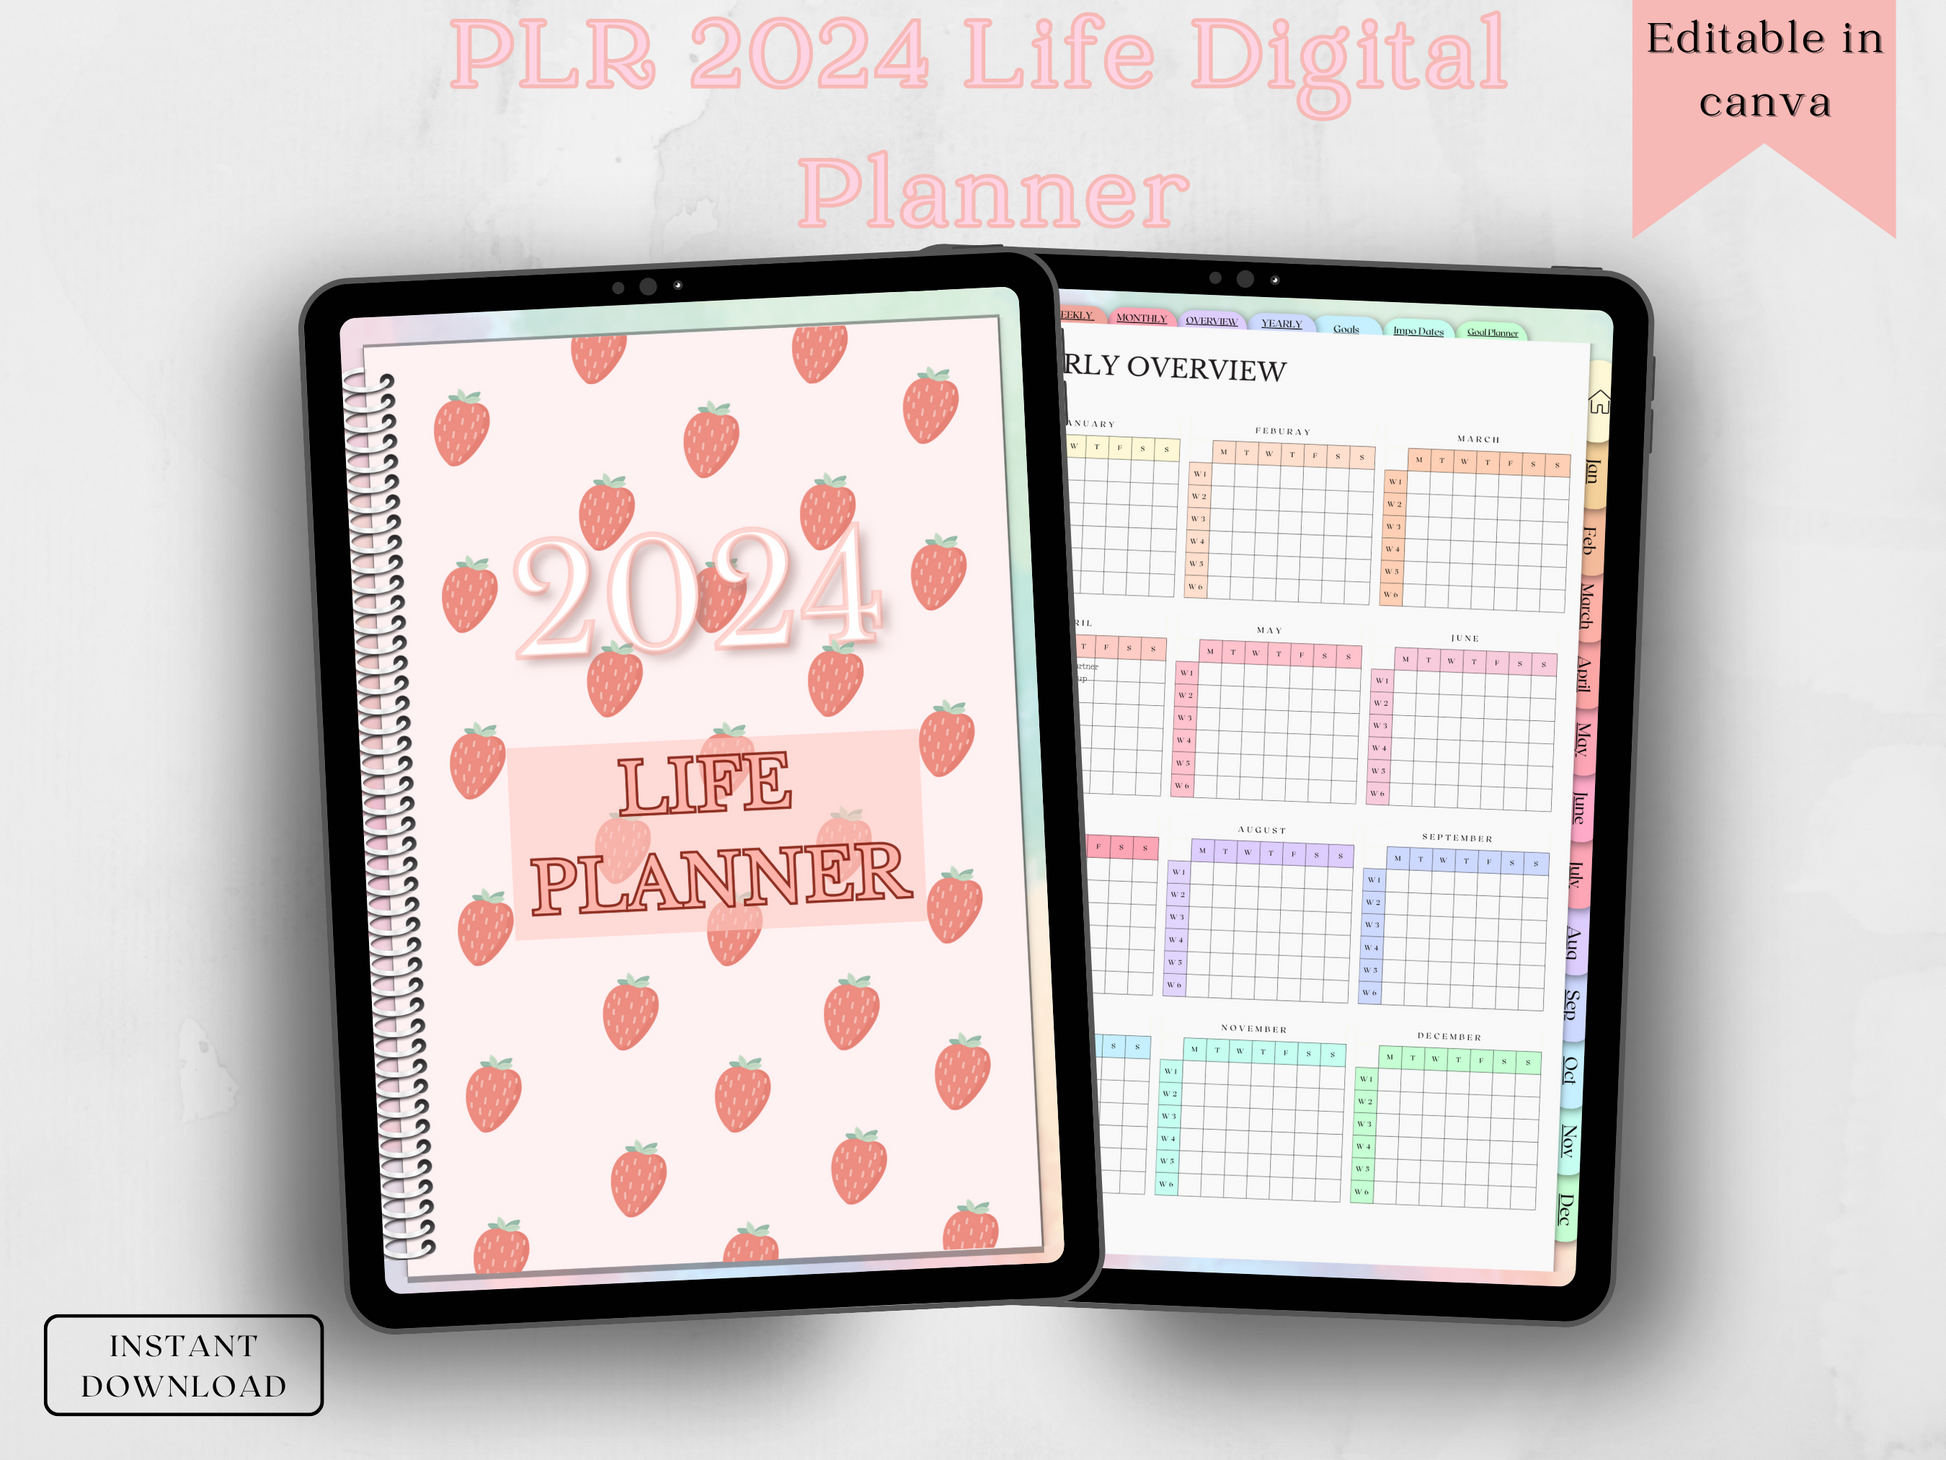 PLR 2024 Life Planner – Social Cheat Sheet 2.0